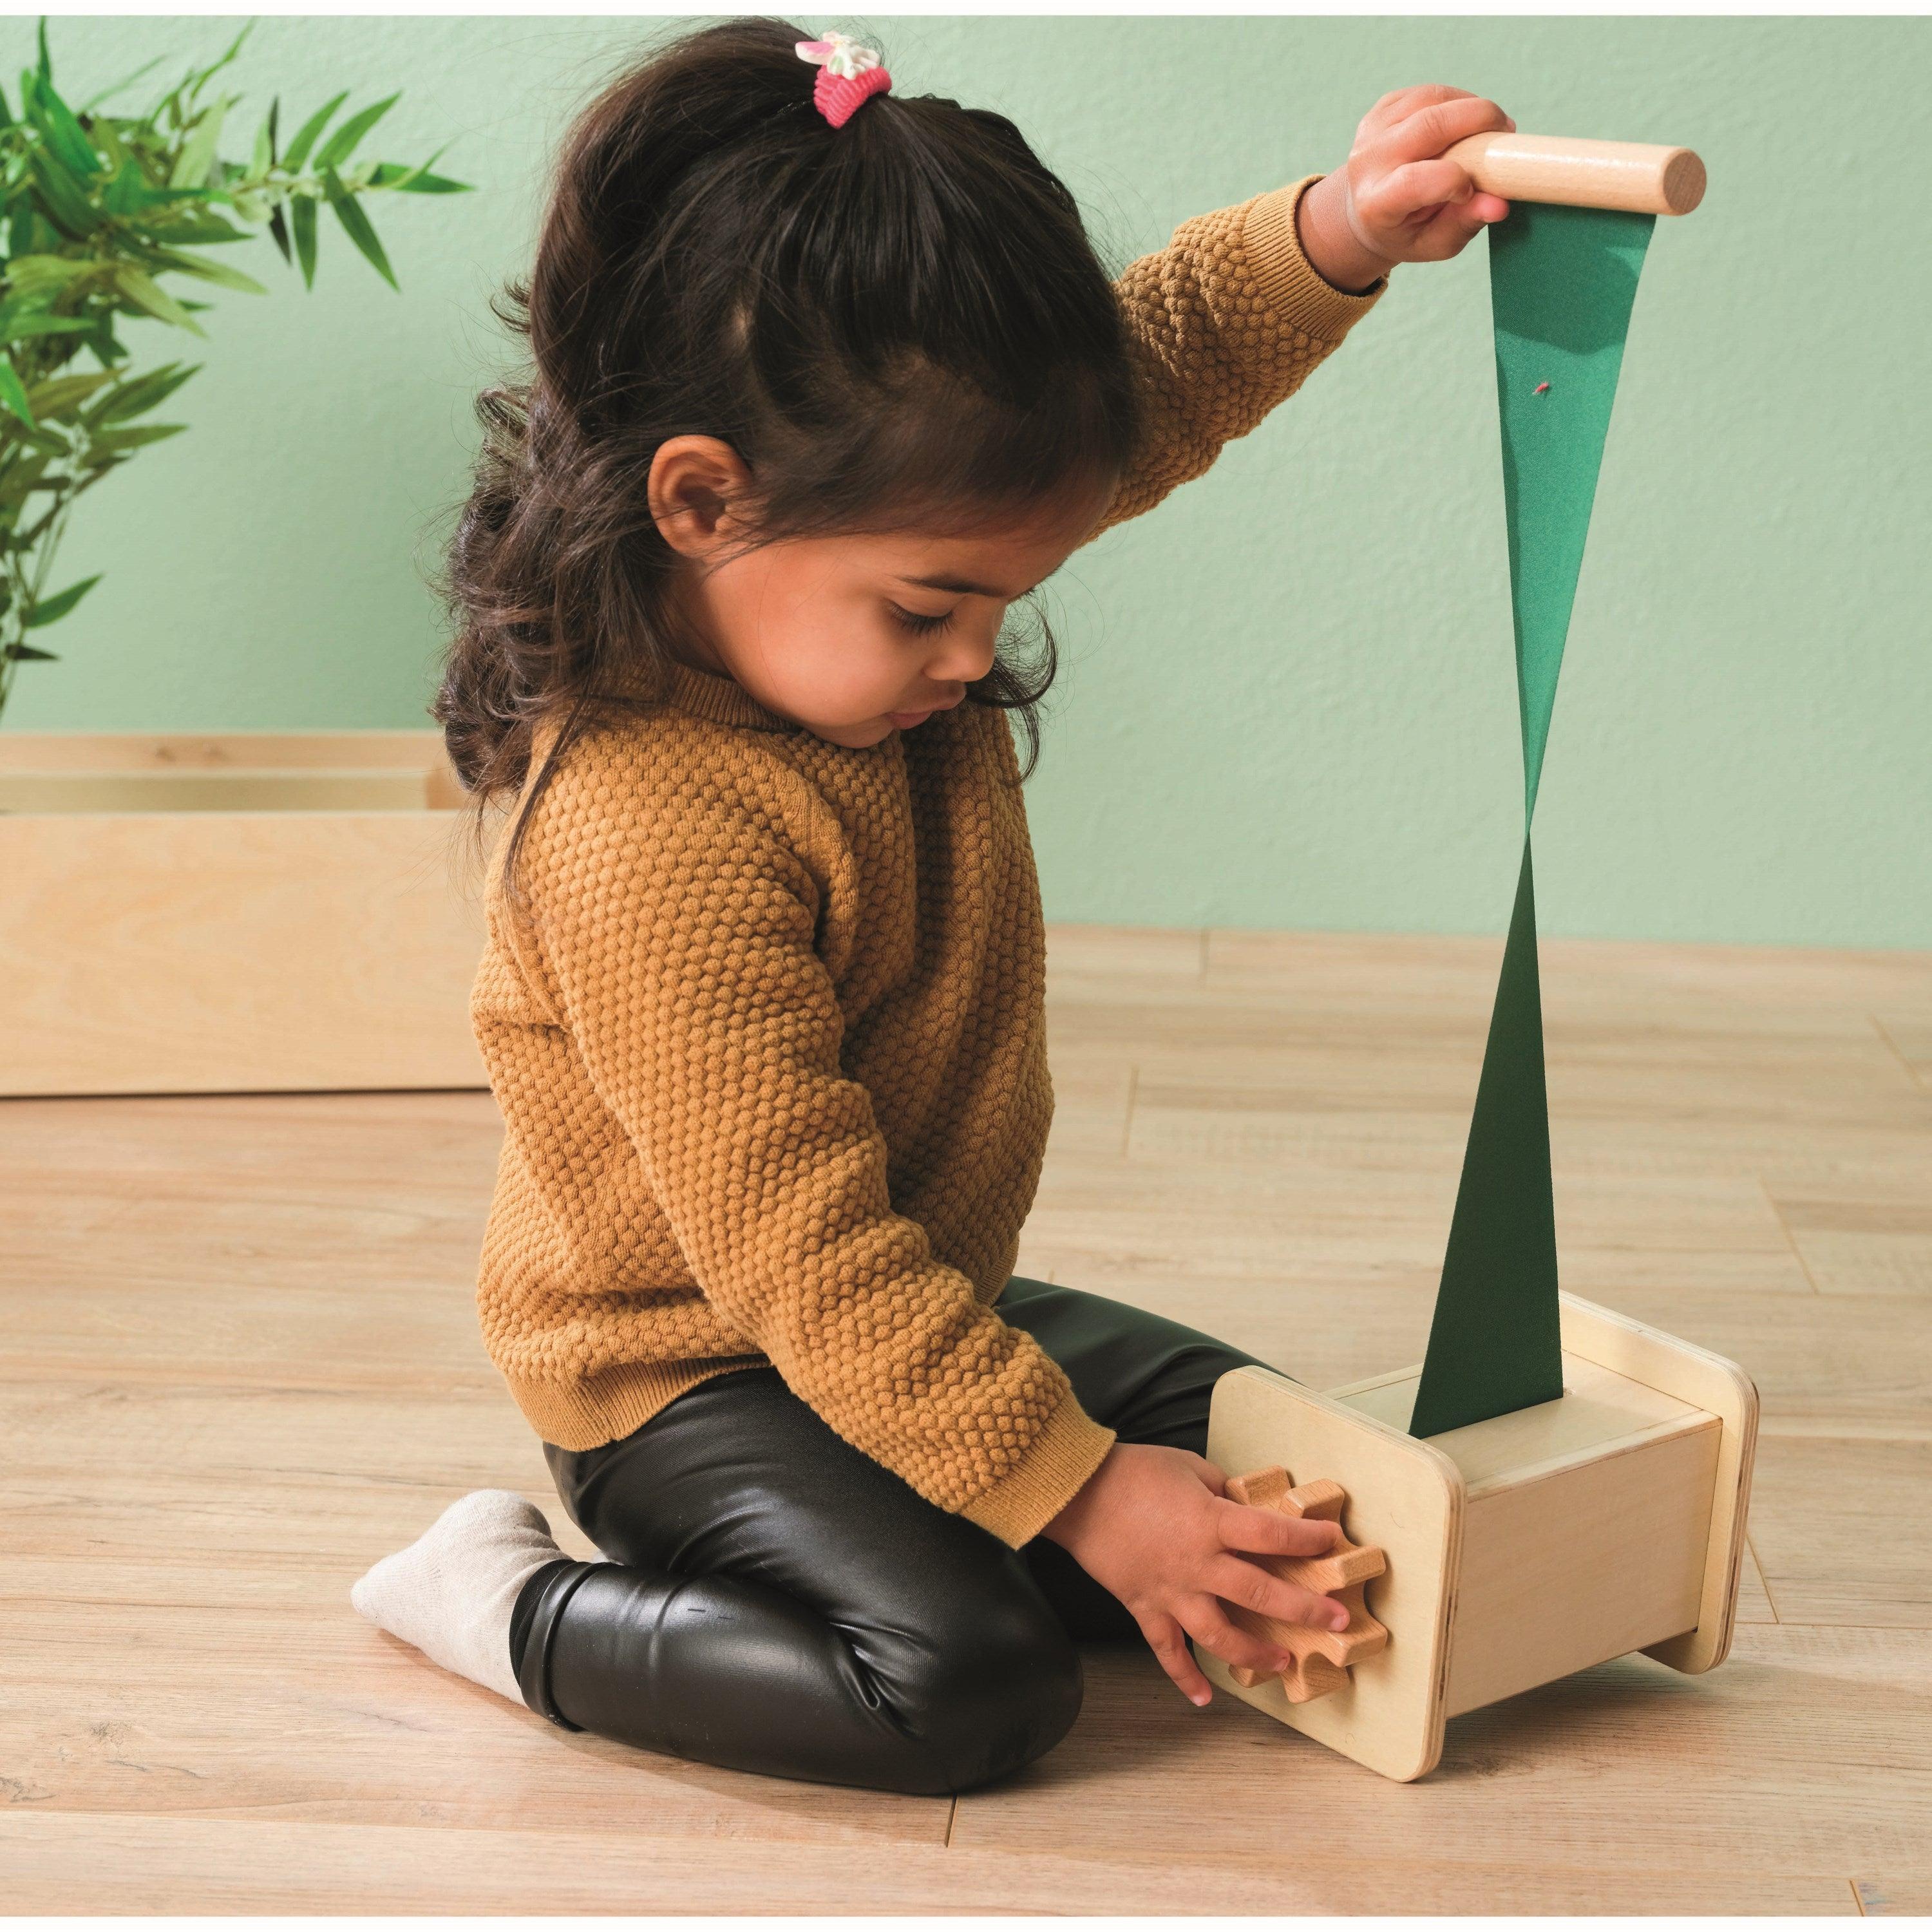 EDCO: Wind the Fabric Montessori